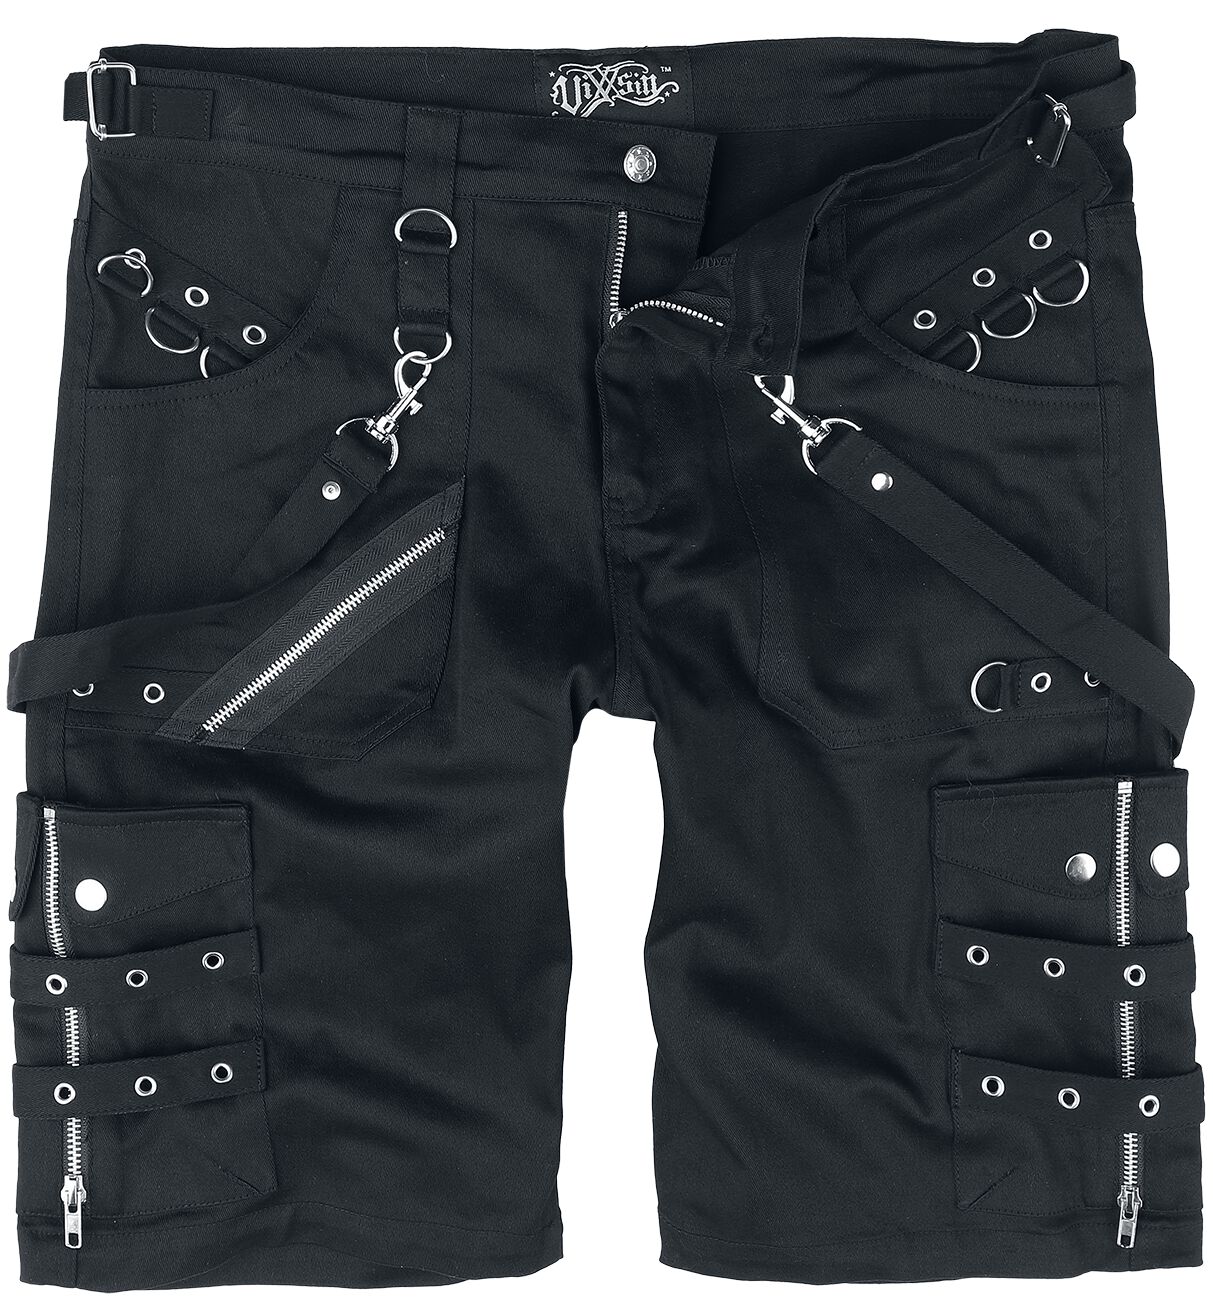 Vixxsin - Gothic Short - Edham Shorts - 30 bis 38 - für Männer - Größe 36 - schwarz